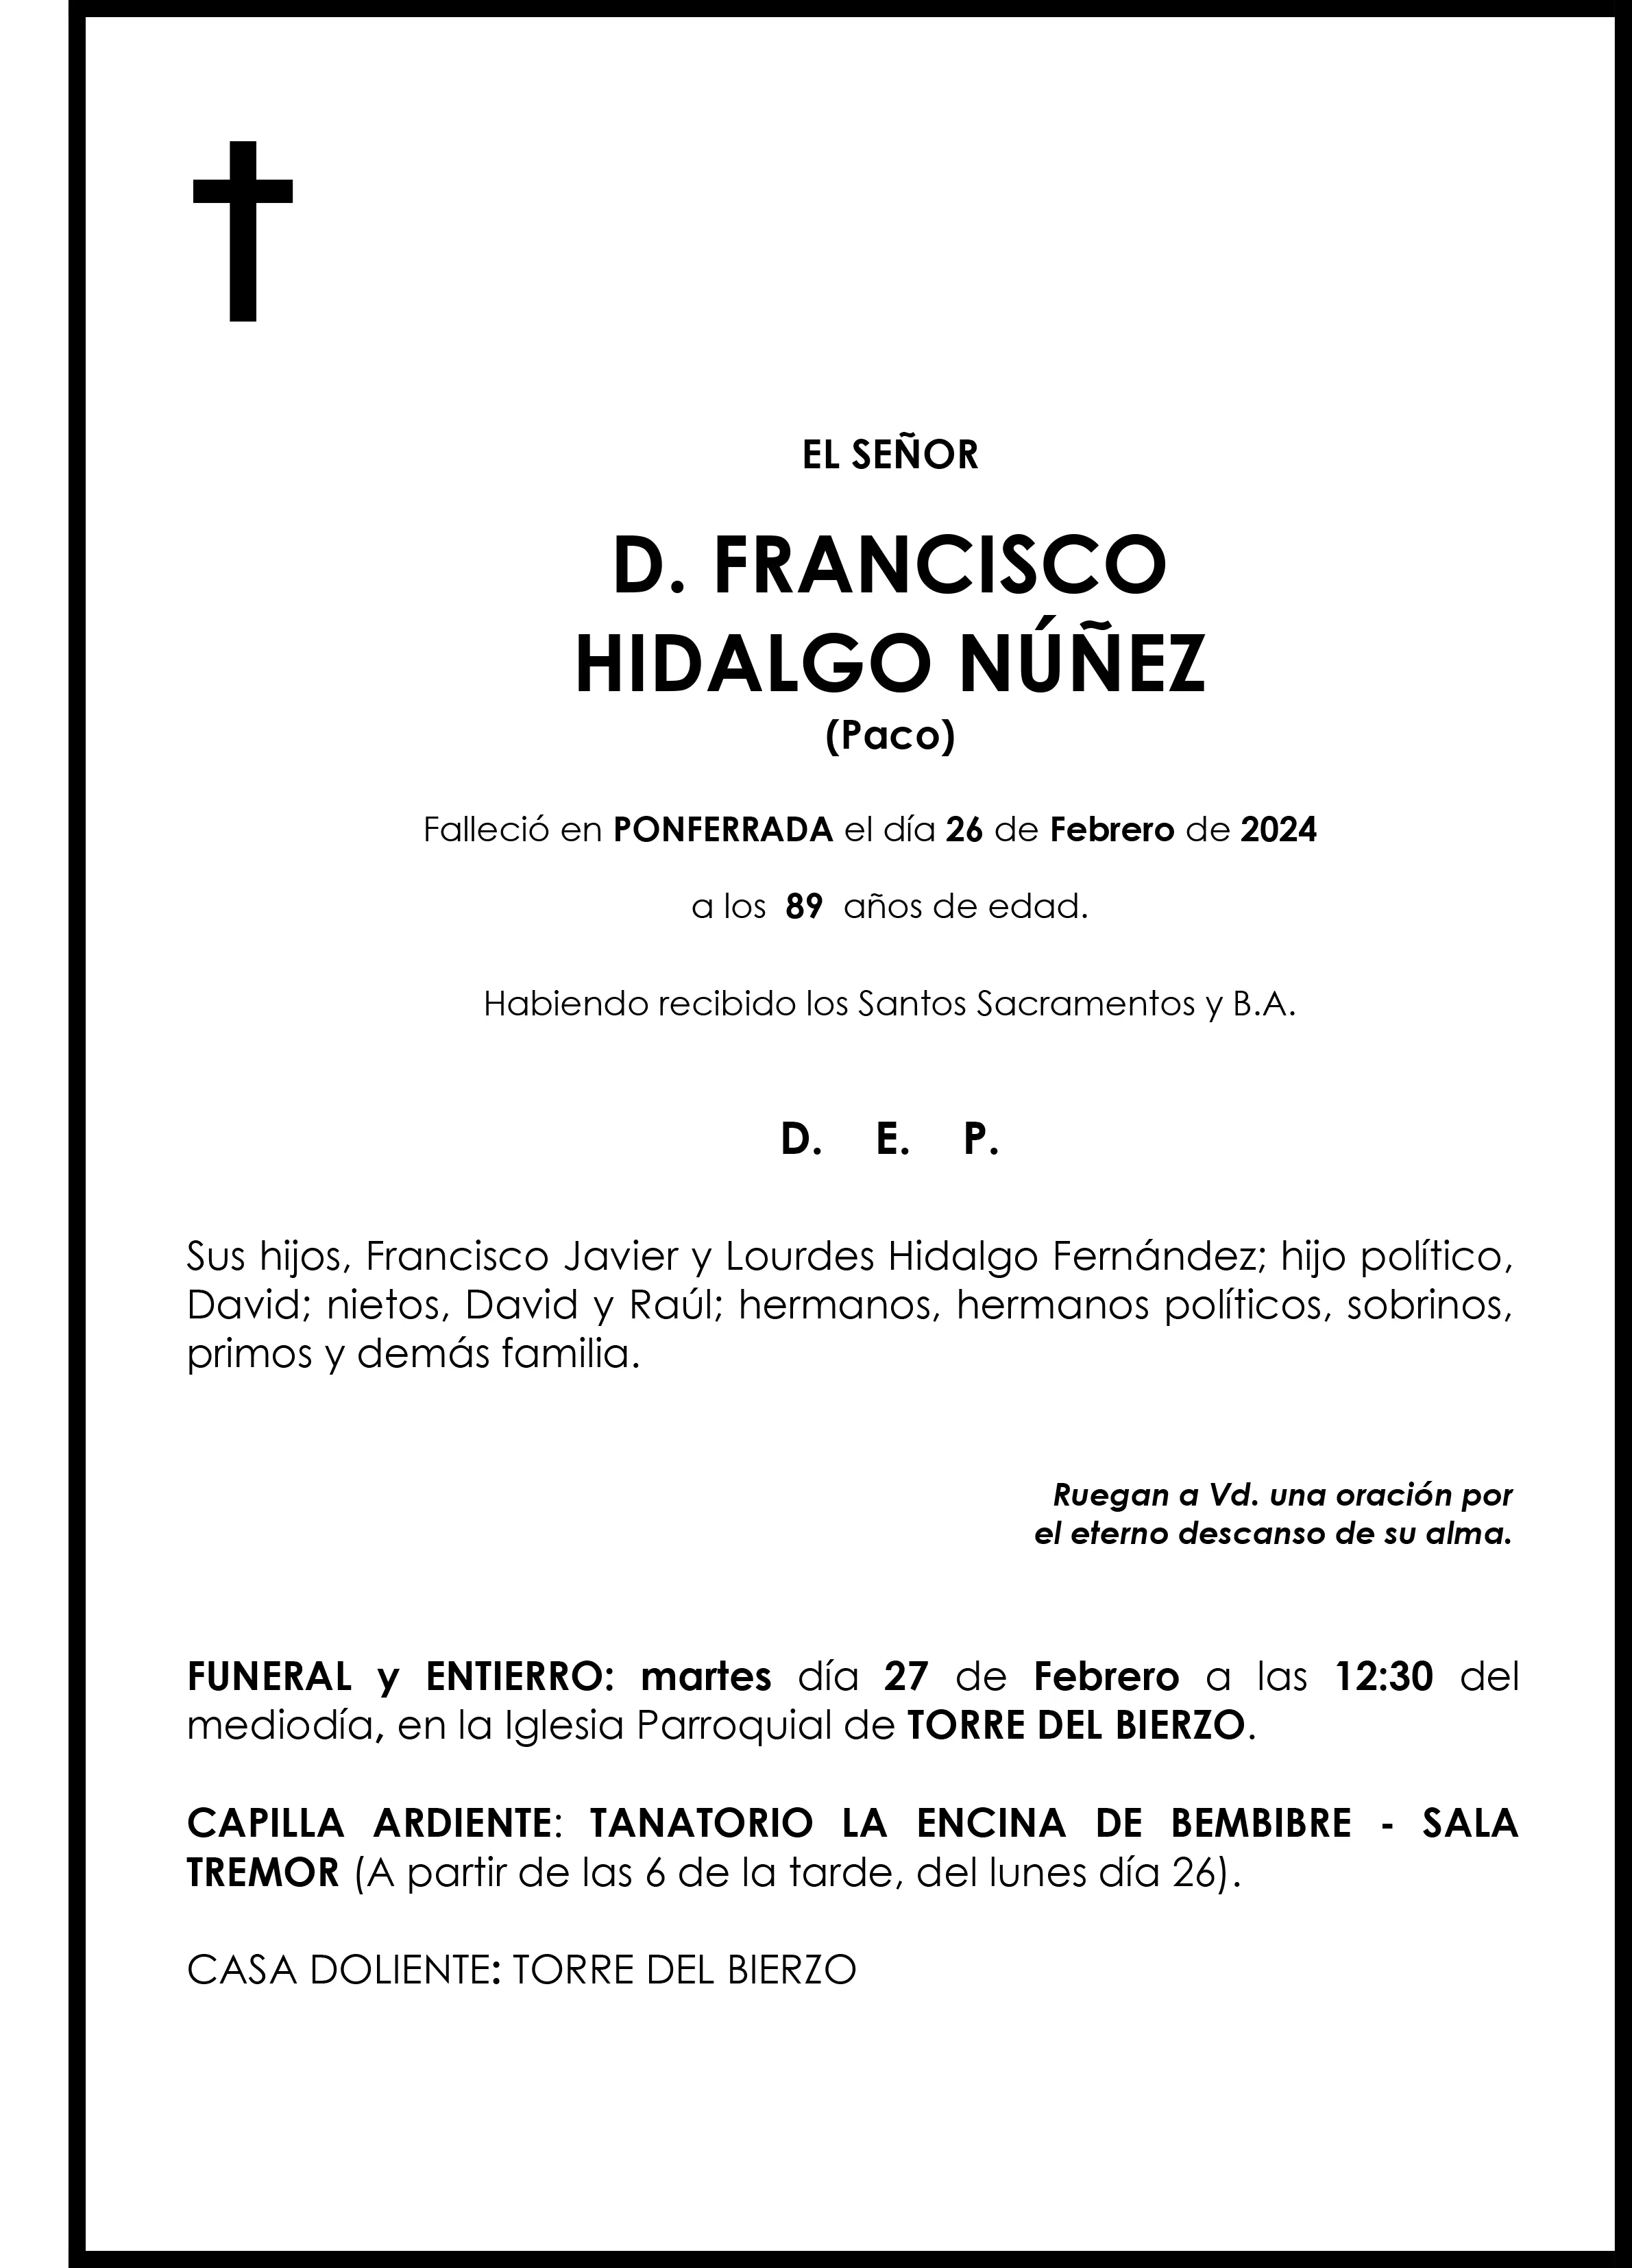 FRANCISCO HIDALGO NUÑEZ